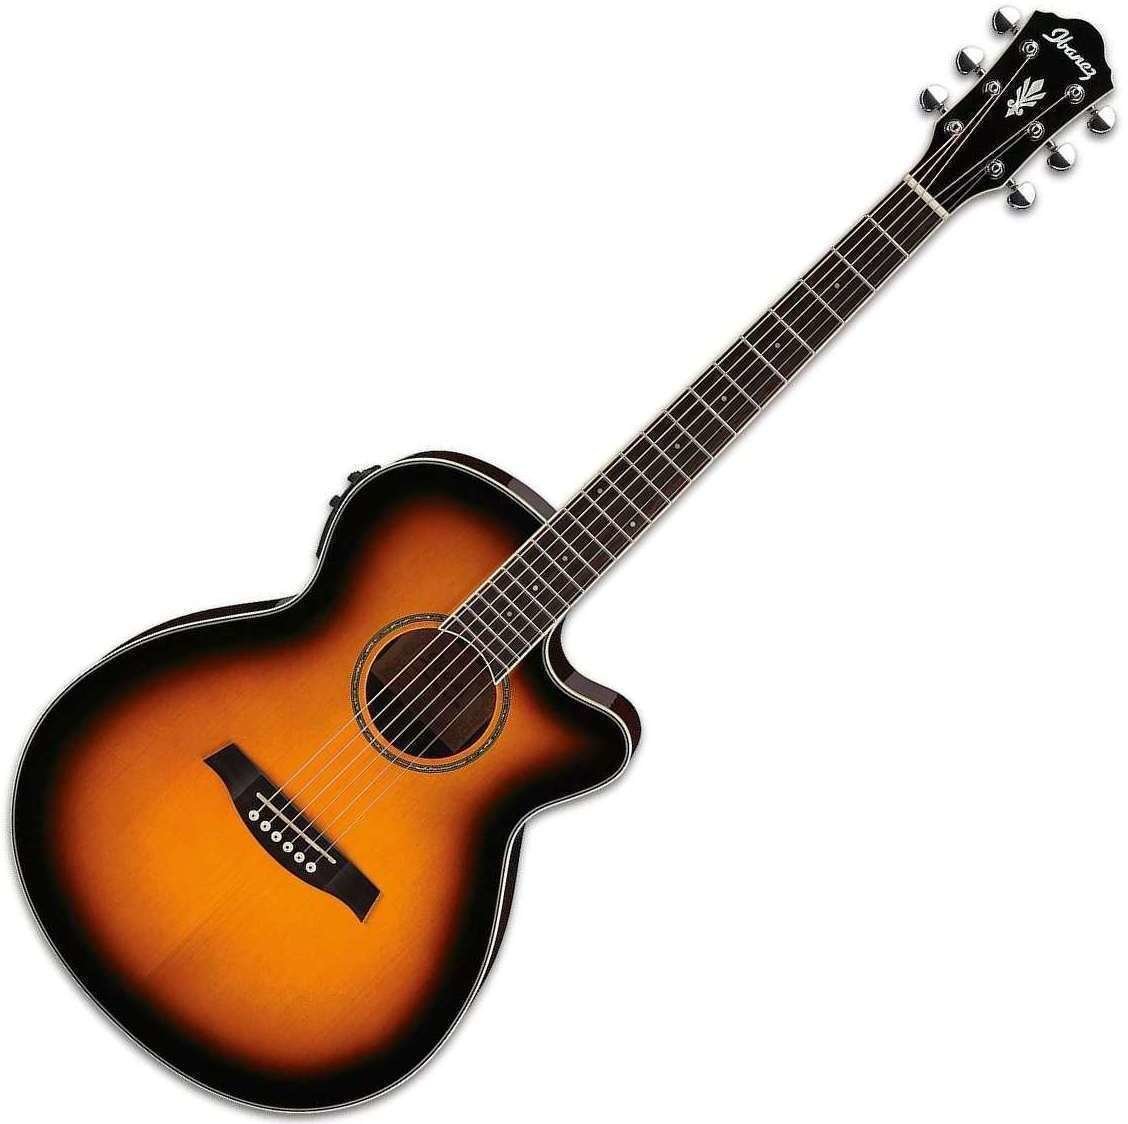 Jumbo elektro-akoestische gitaar Ibanez AEG 10II Vintage Sunburst